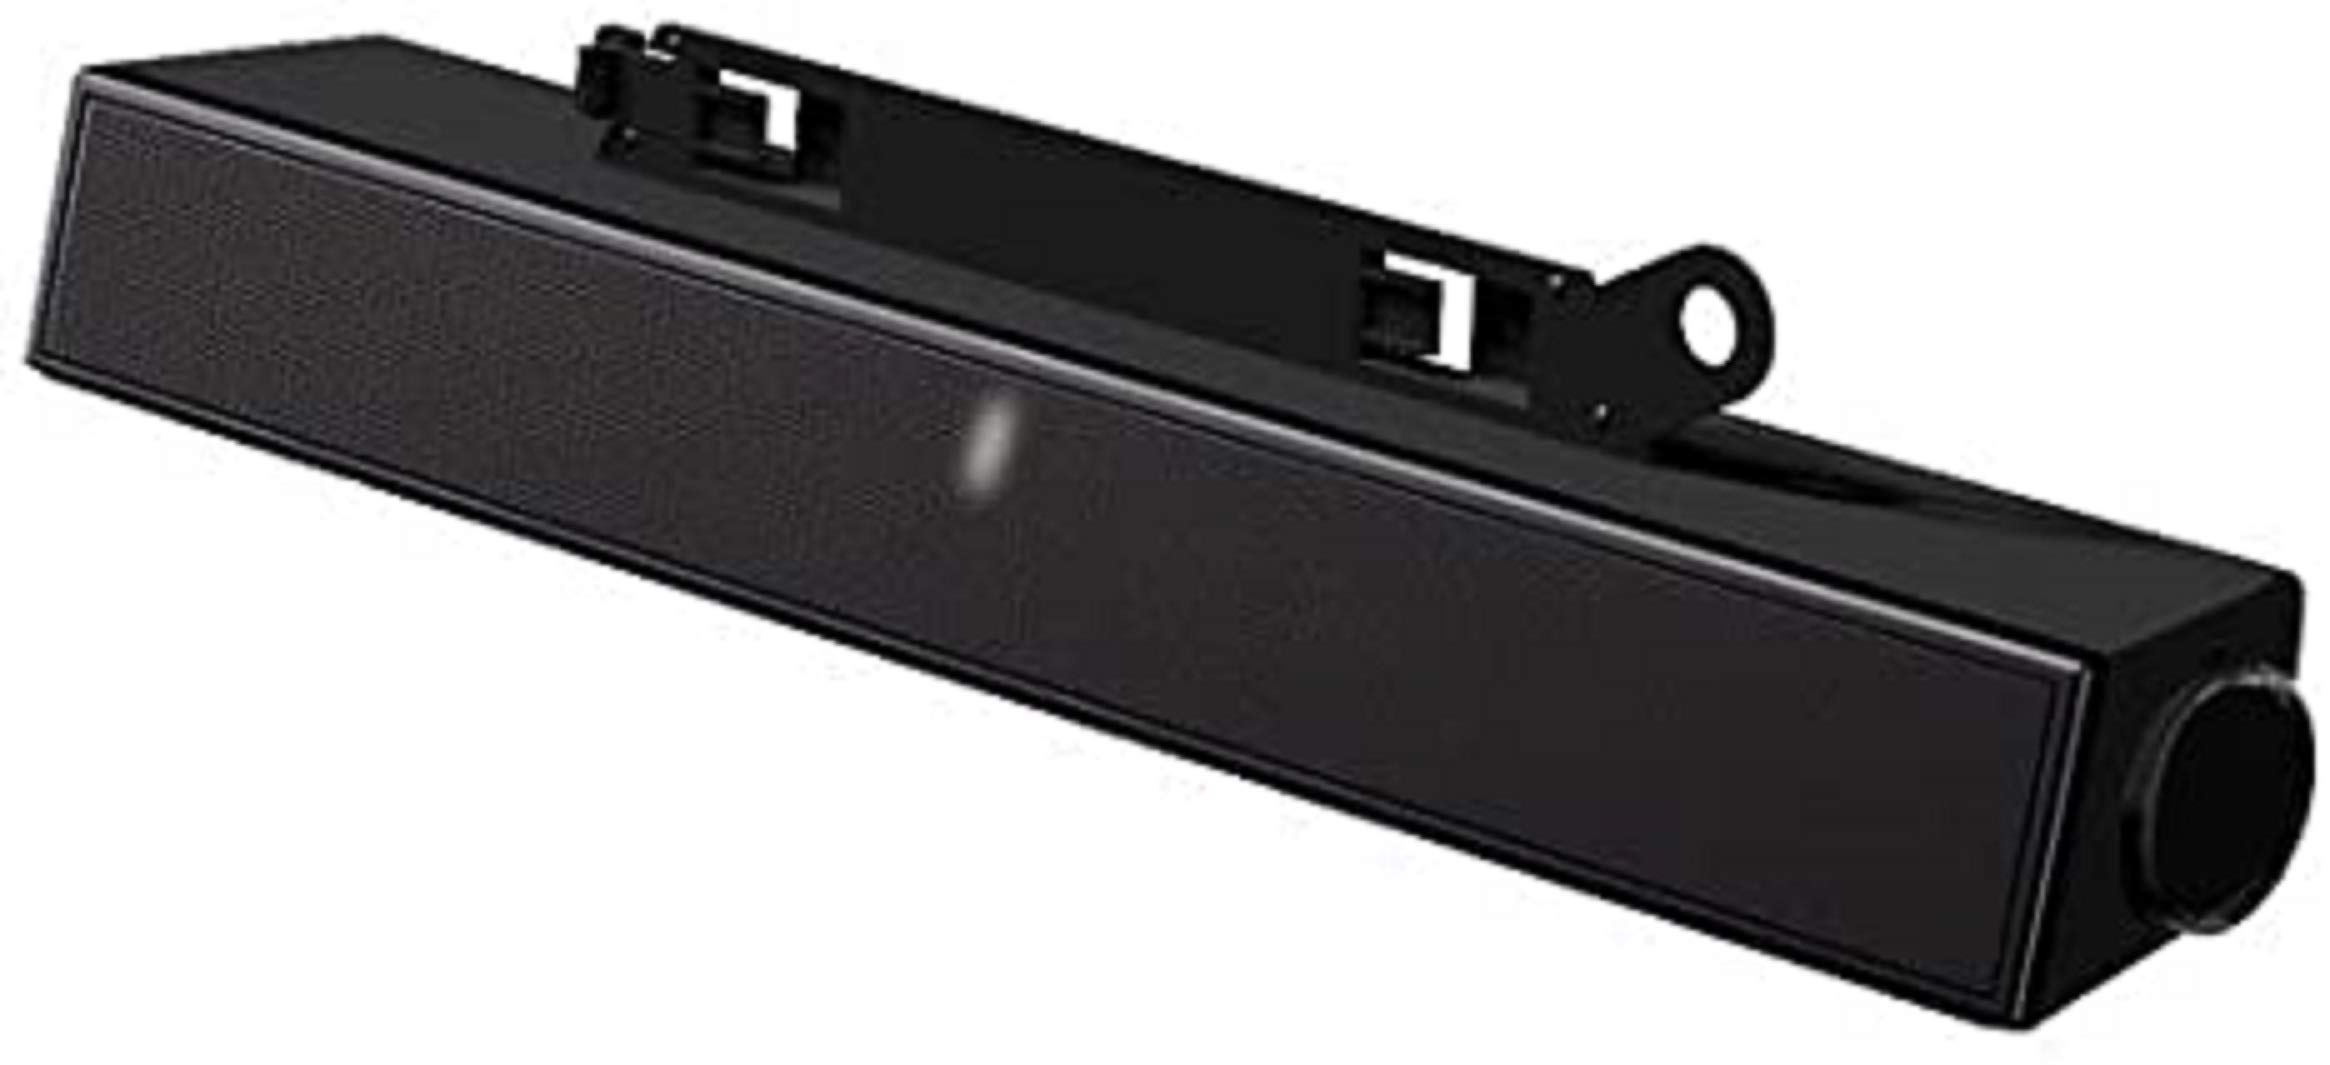 Dell AX510 Sound Bar Speaker for UltraSharp (C730C)